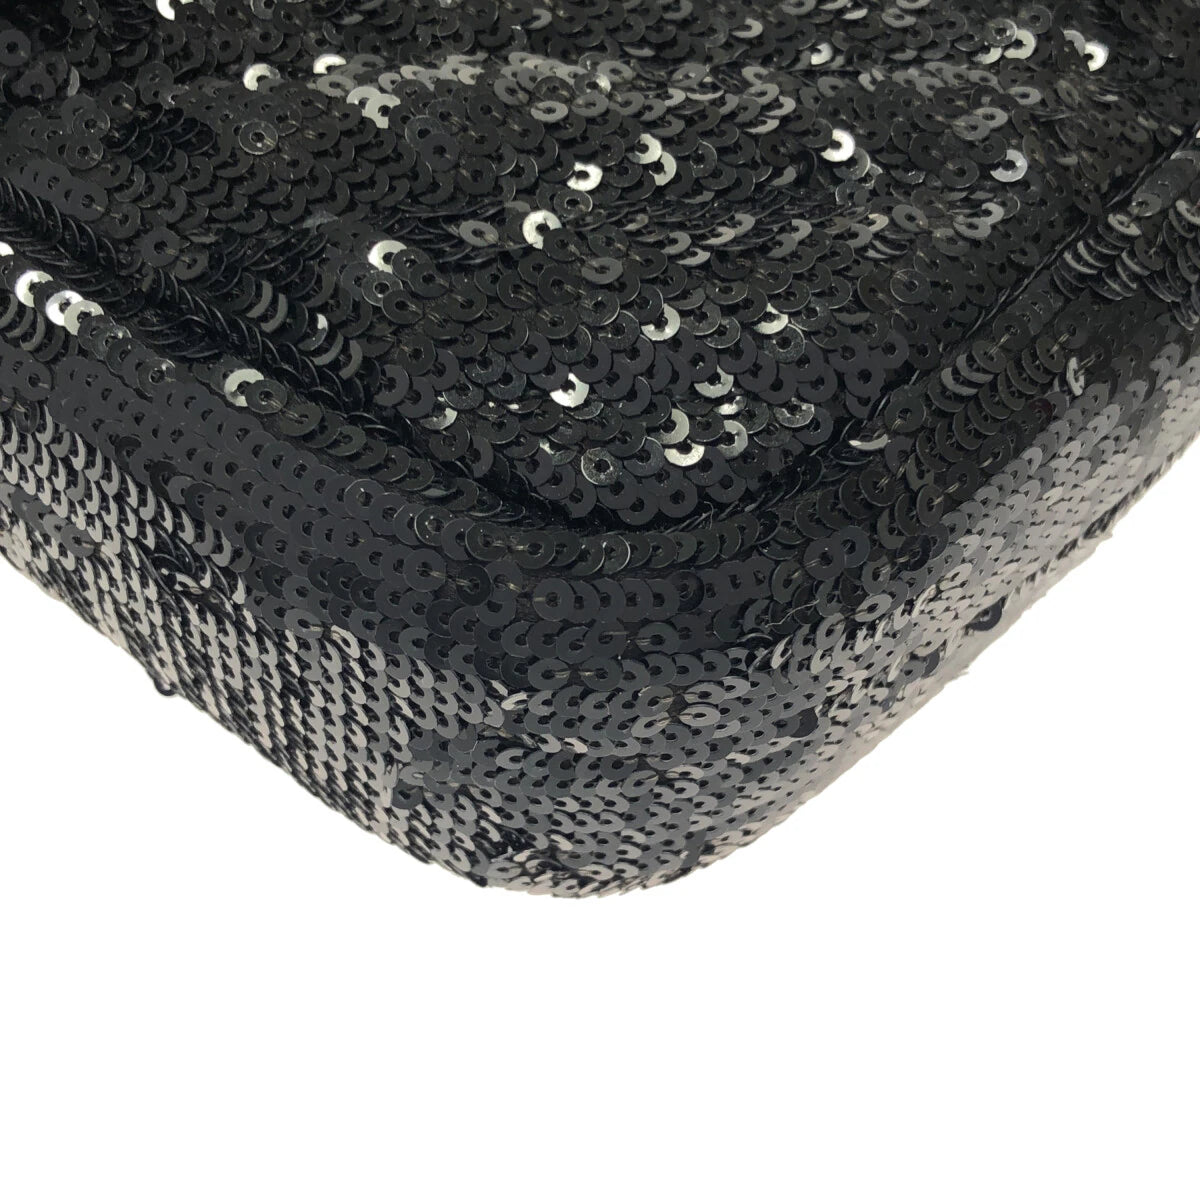 GUCCI - GG Marmont Shoulder Bag 446744 Black Sequins Leather